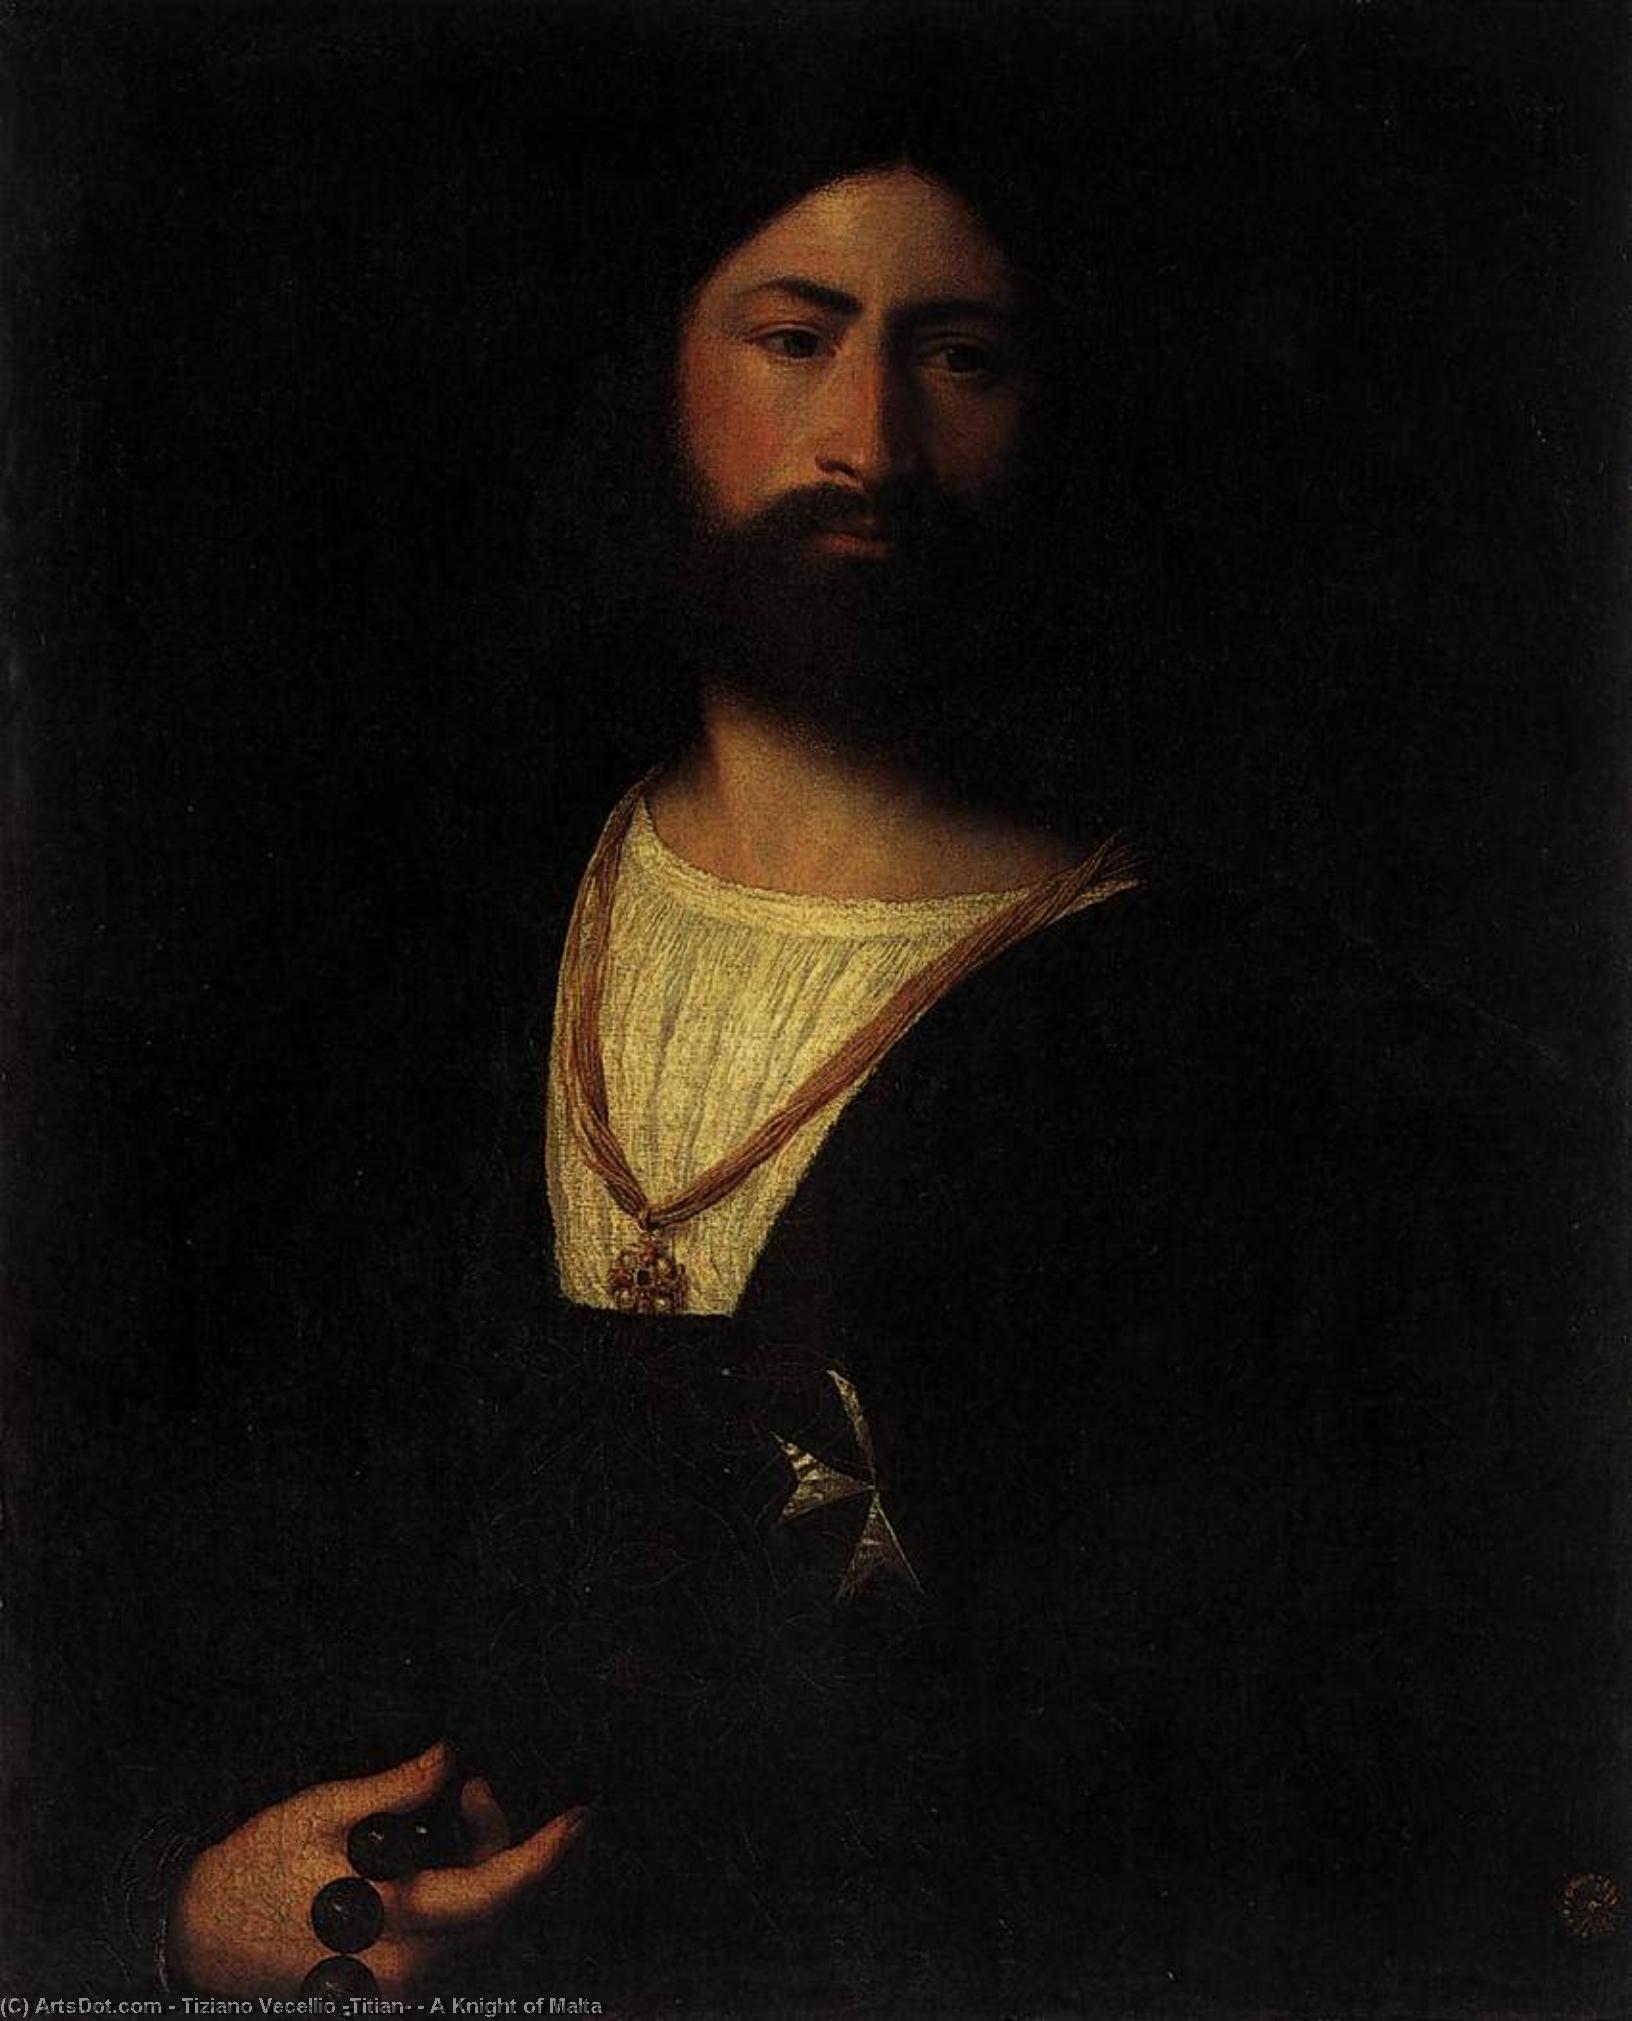 WikiOO.org - Encyclopedia of Fine Arts - Maleri, Artwork Tiziano Vecellio (Titian) - A Knight of Malta